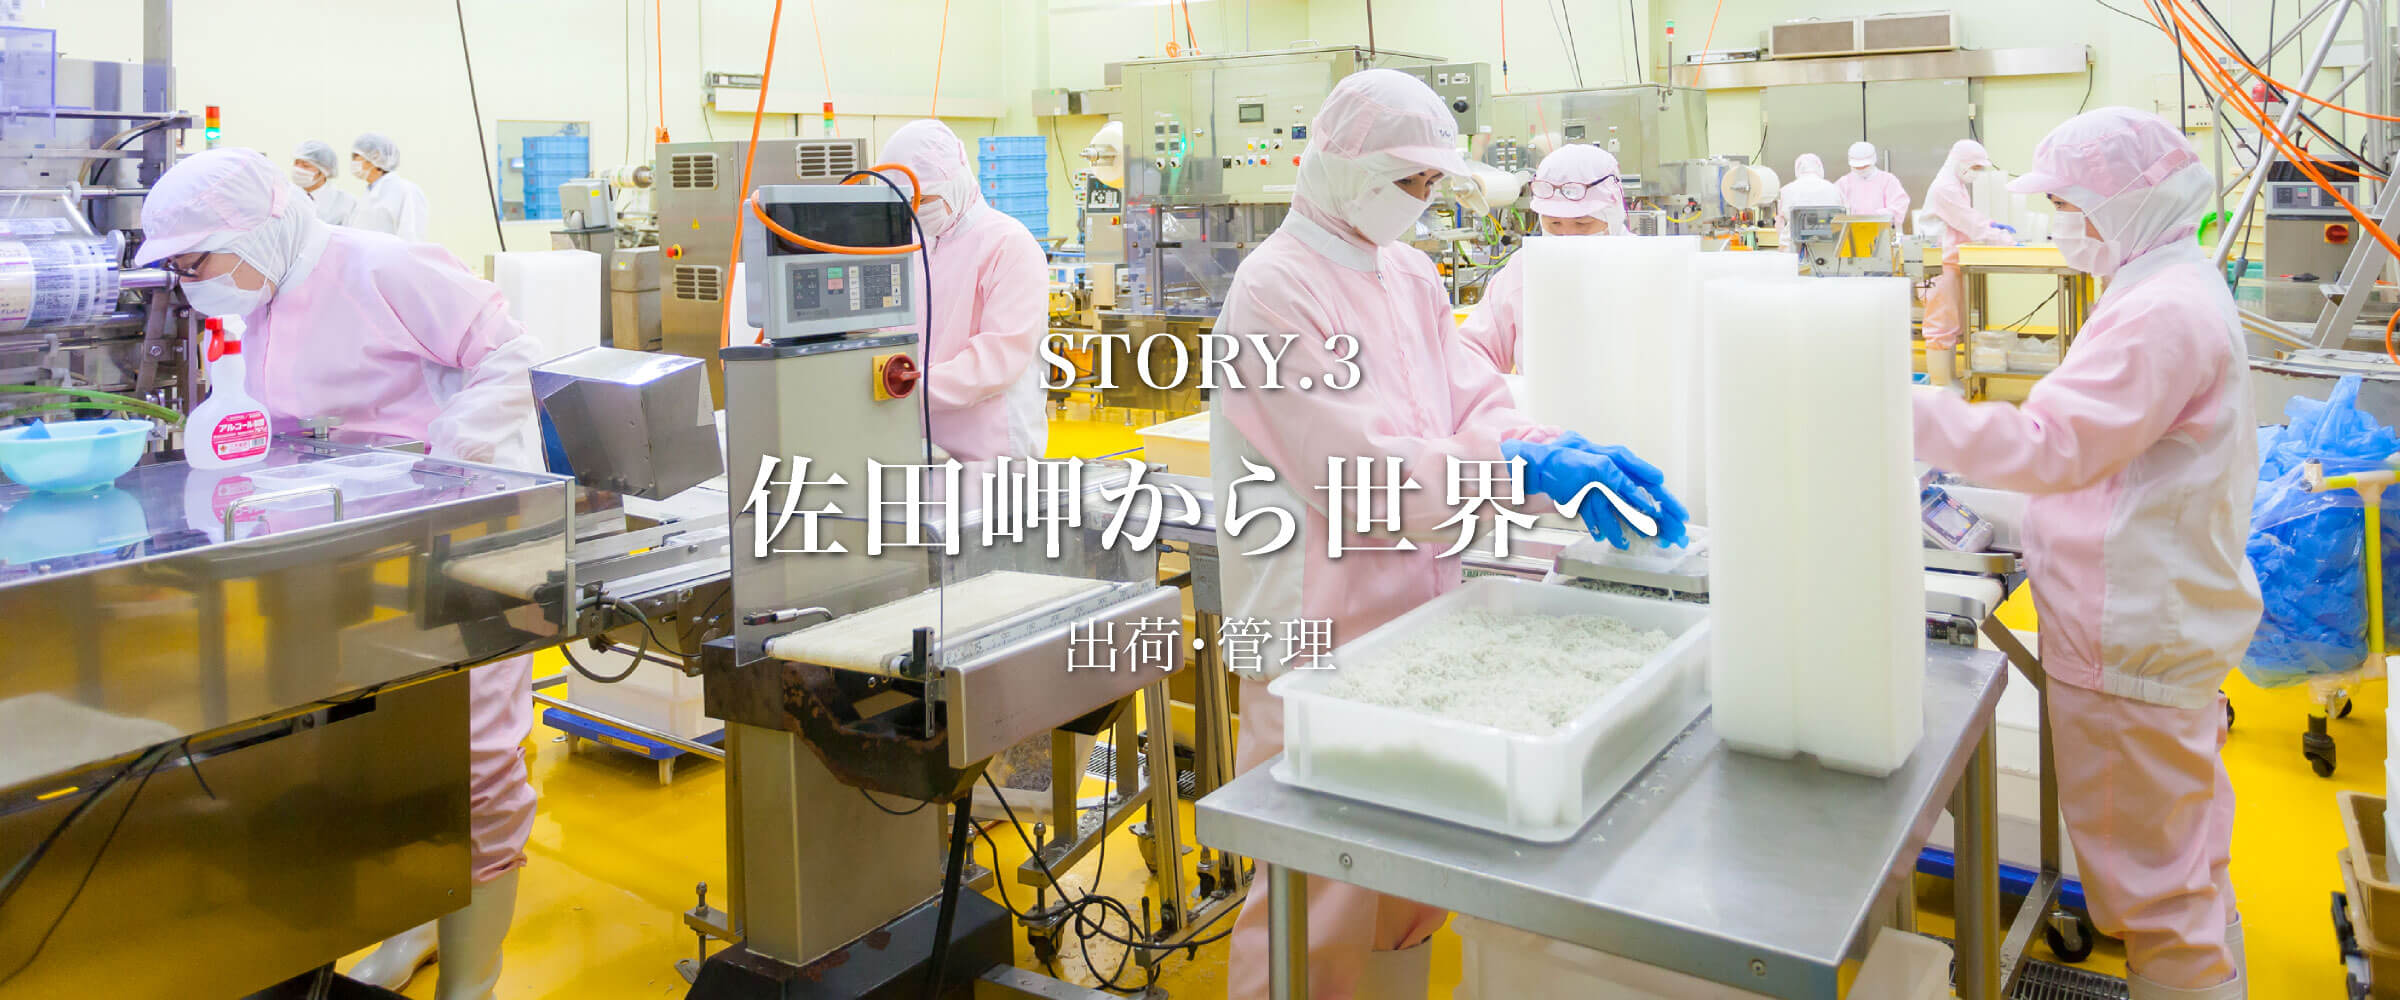 Story3 「佐田岬から世界へ」 出荷・管理